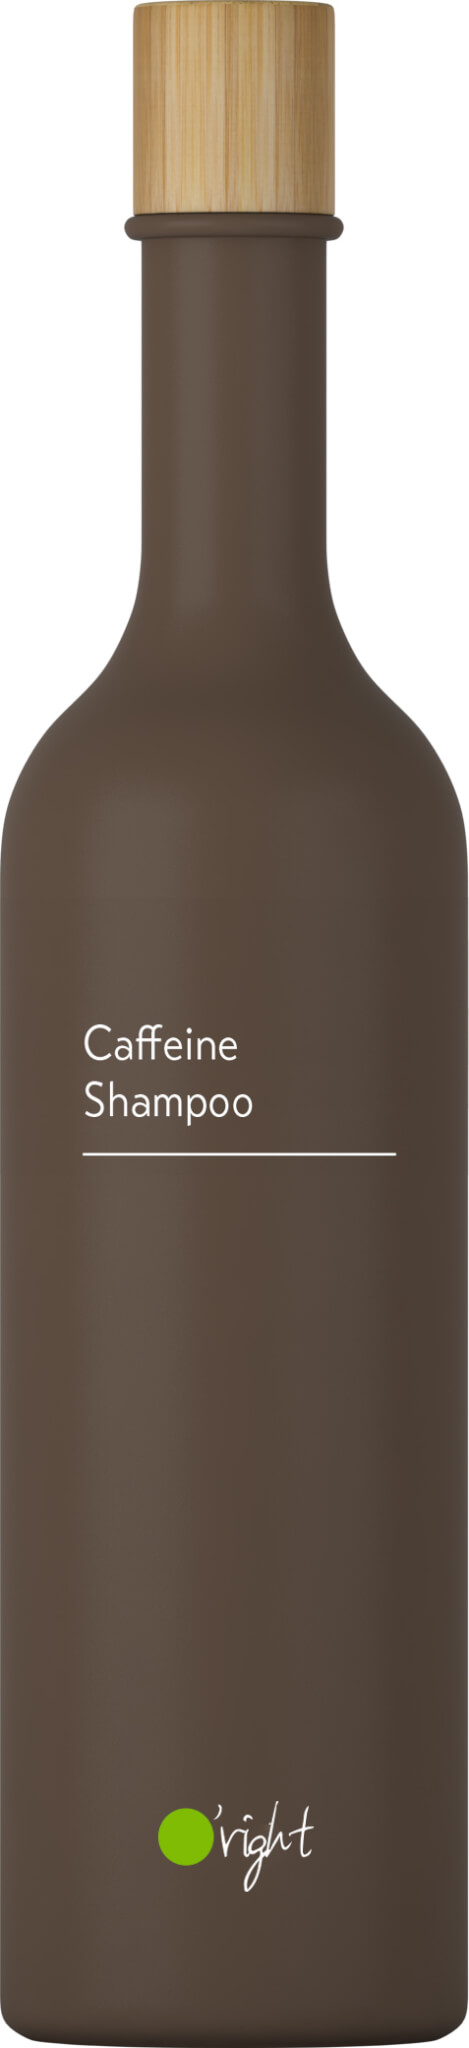 szampon kofeinowy caffeine shampoo oright 250 ml sklep